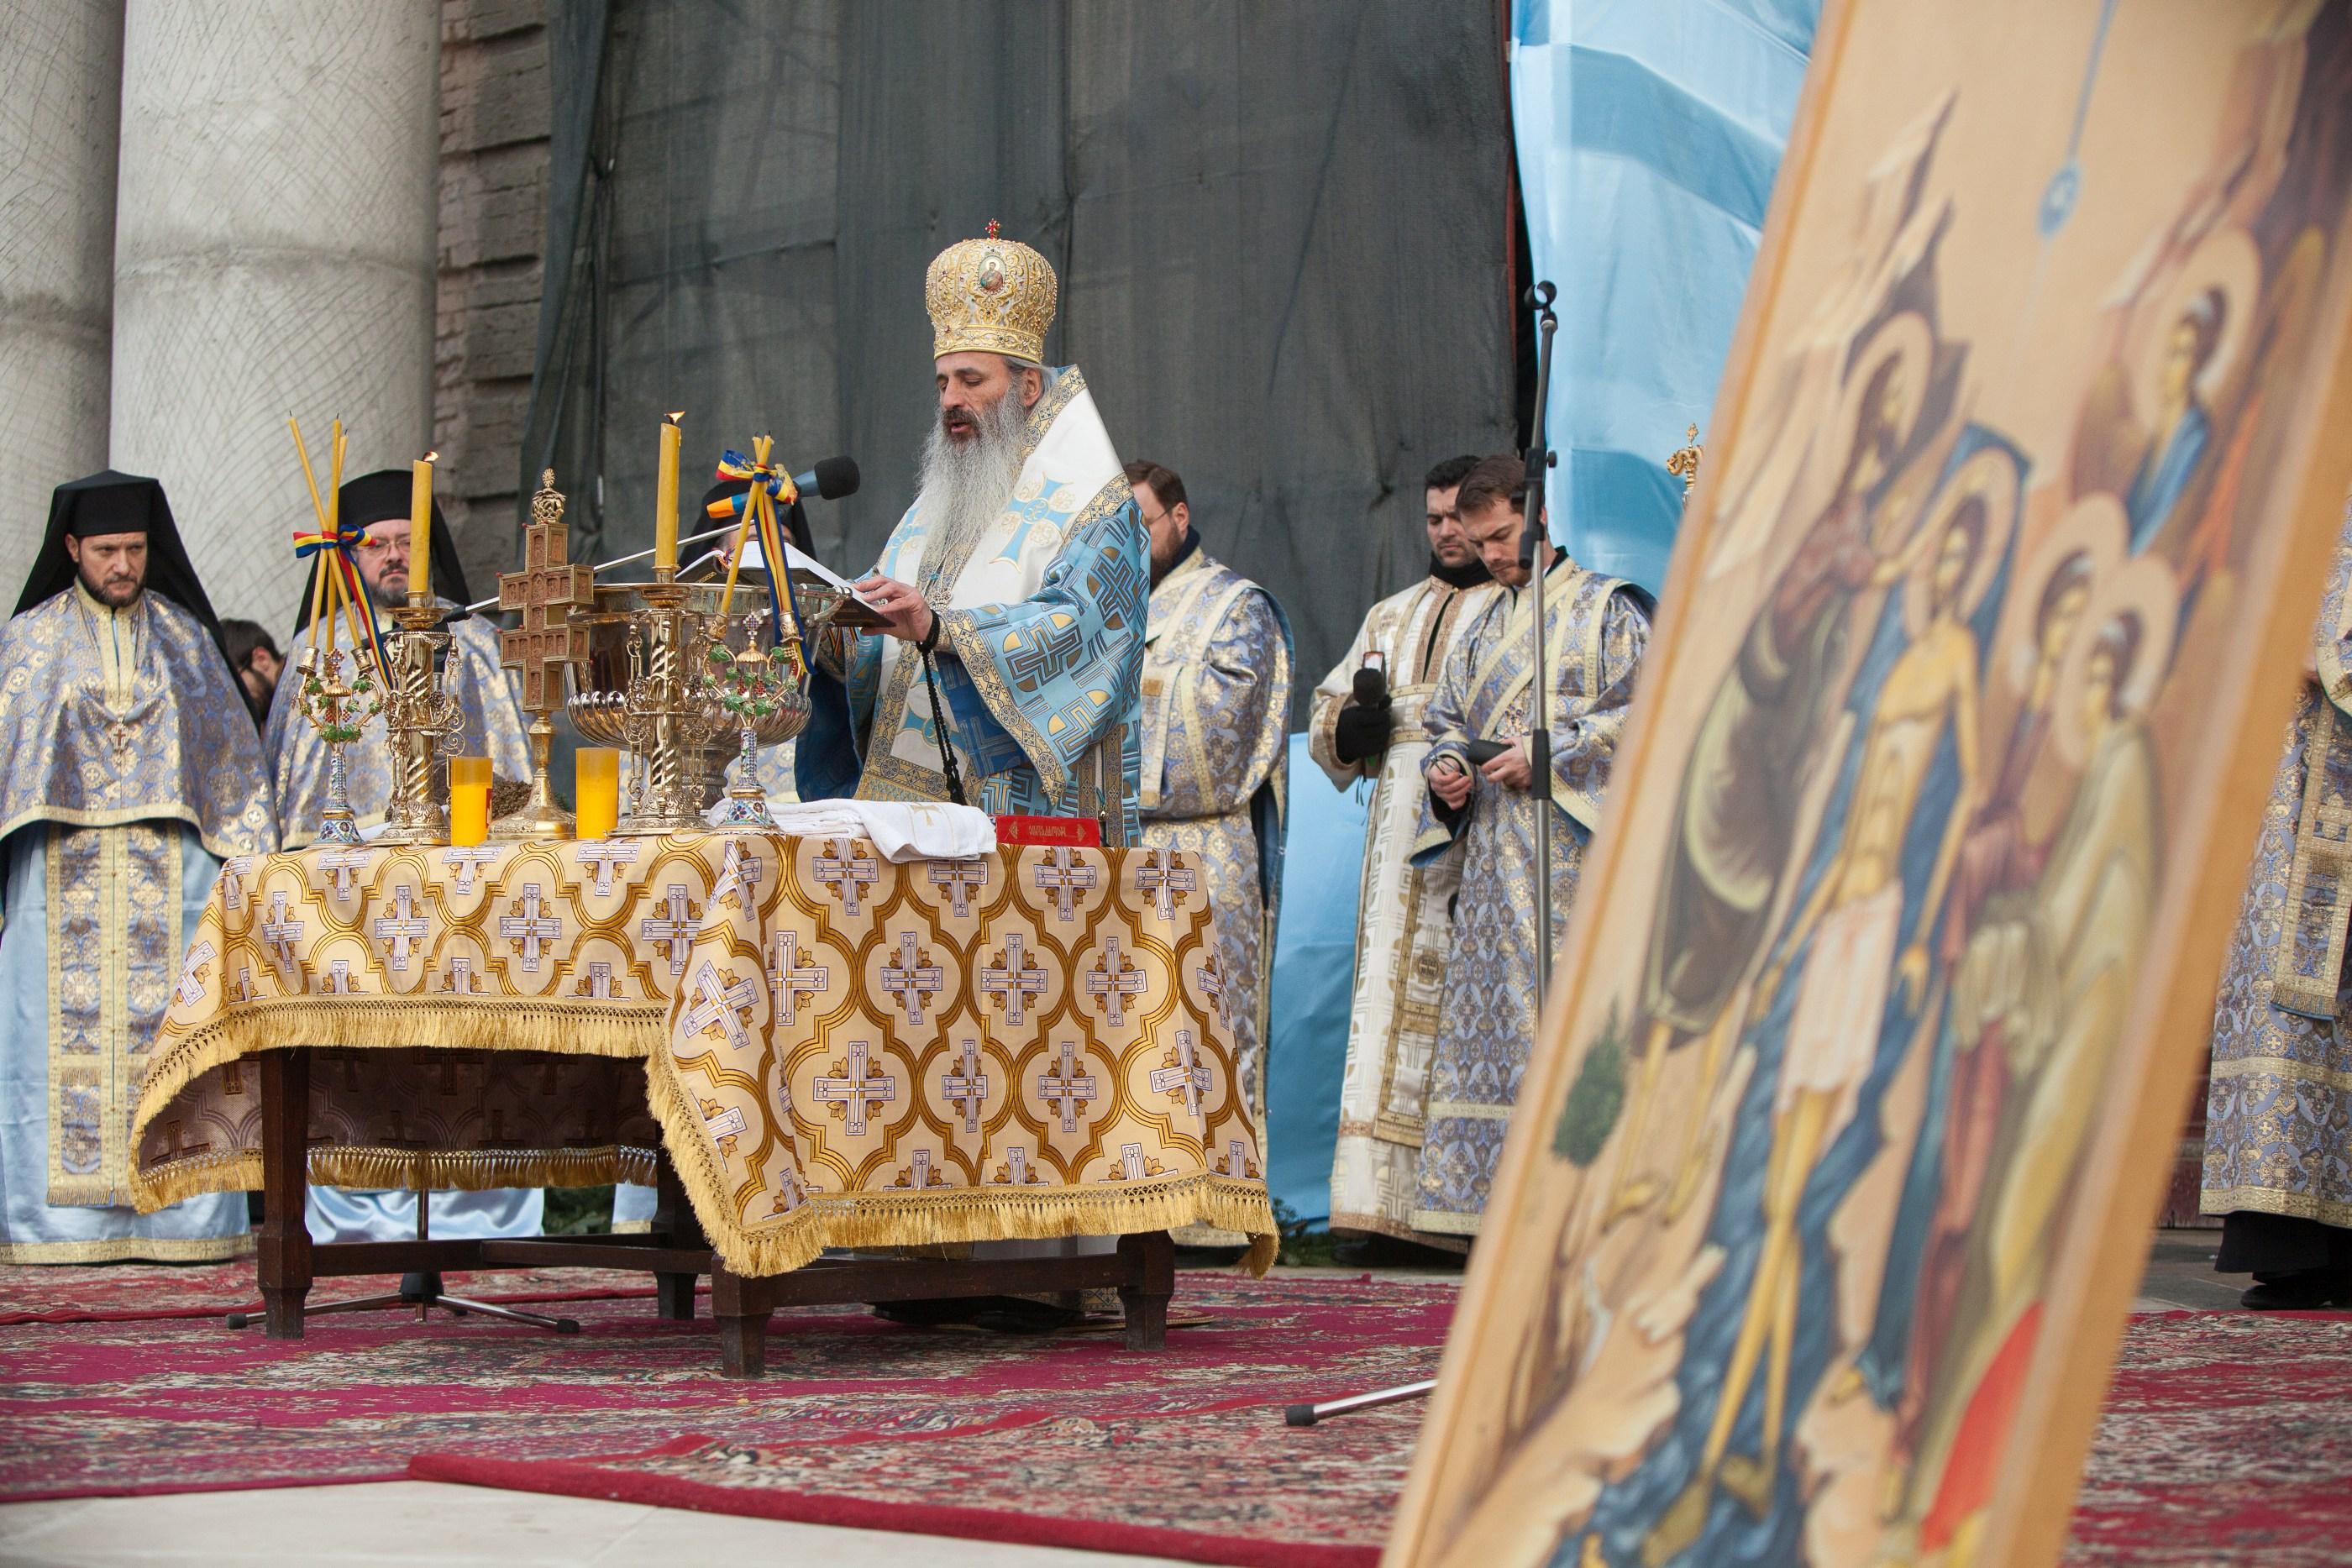 icoana cu sfantul ioan botezatorul in dreapta si preot in stanga